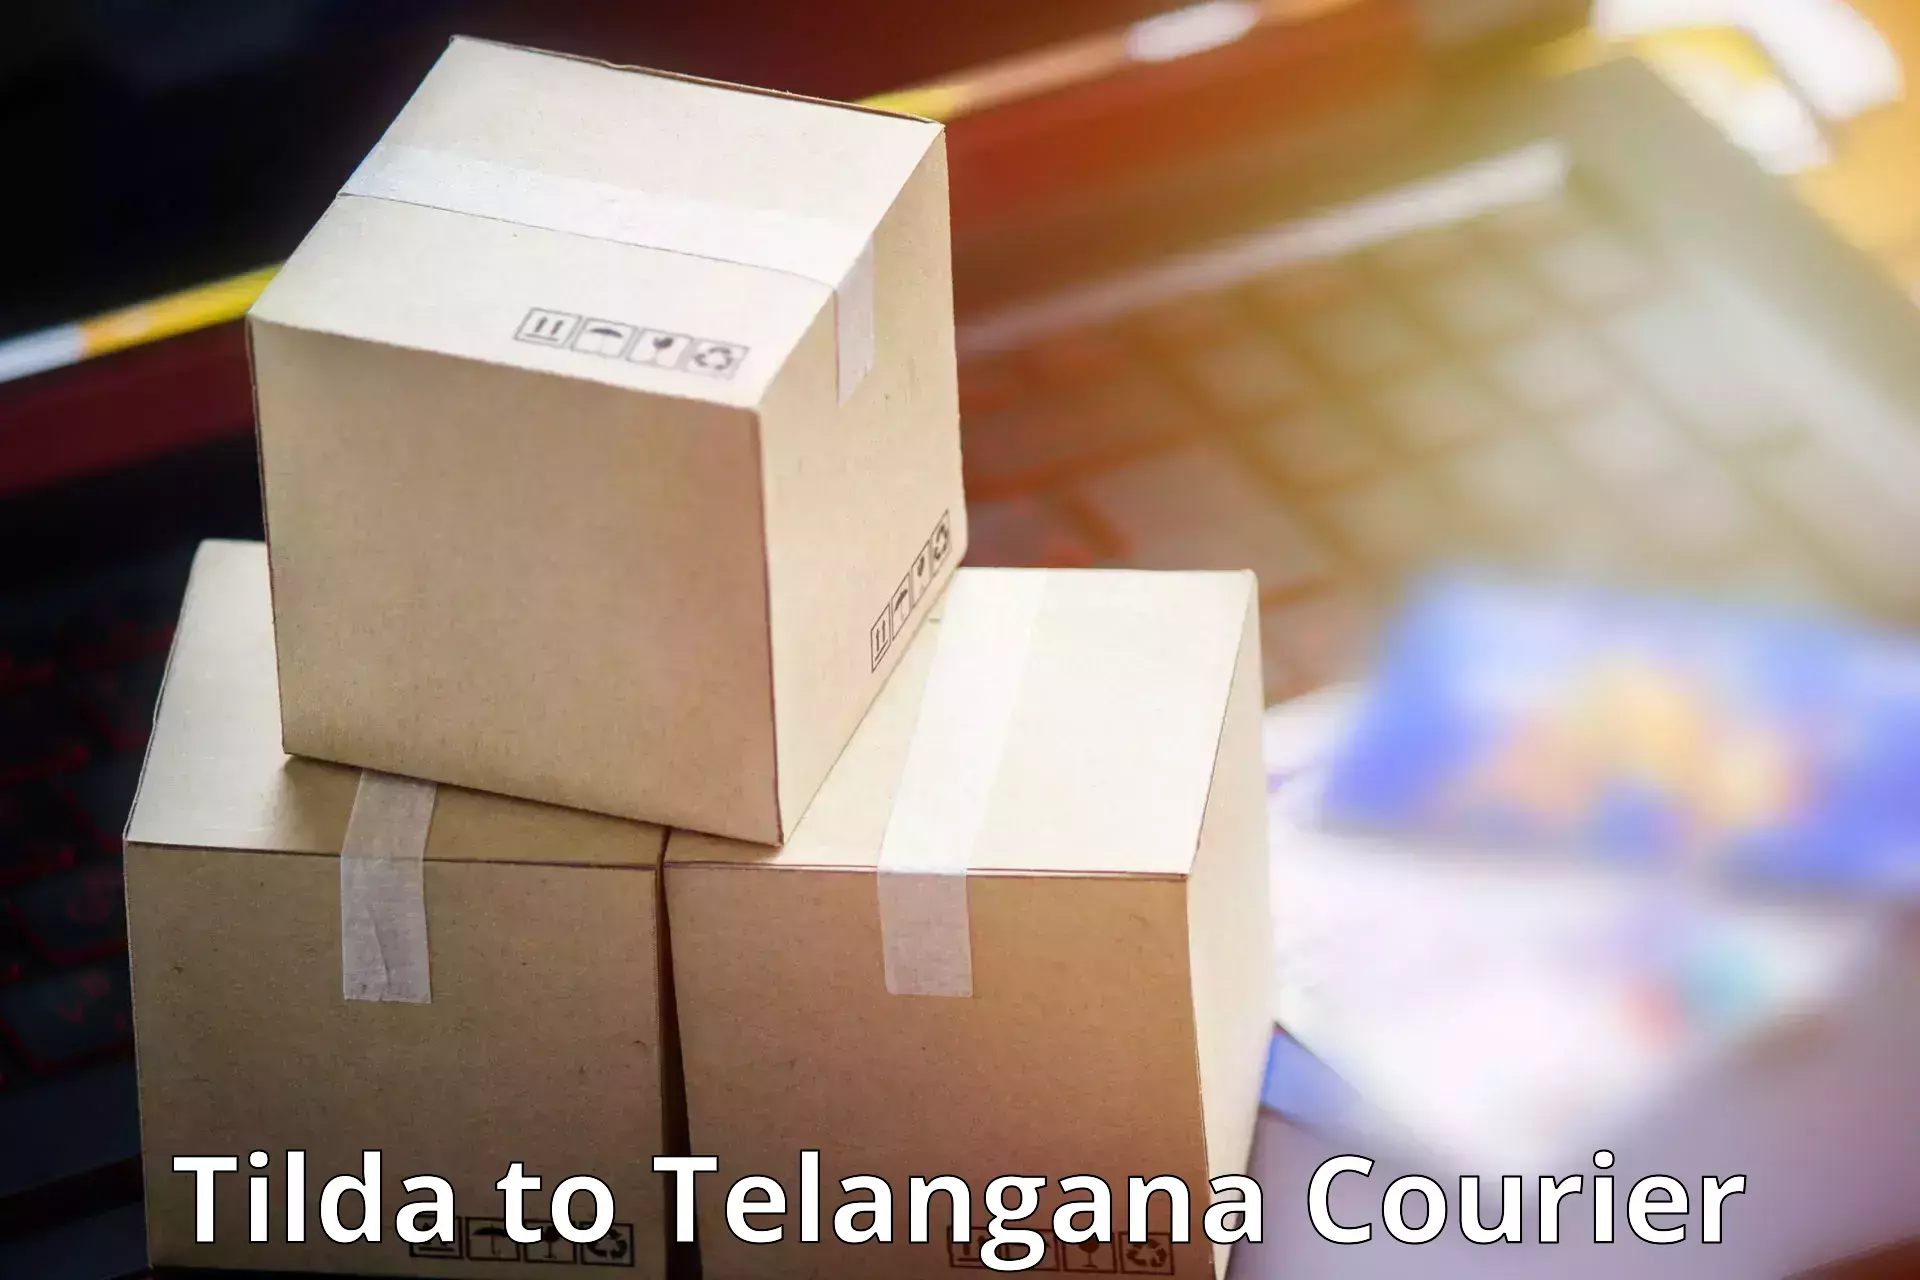 Express package handling in Tilda to Rangareddy